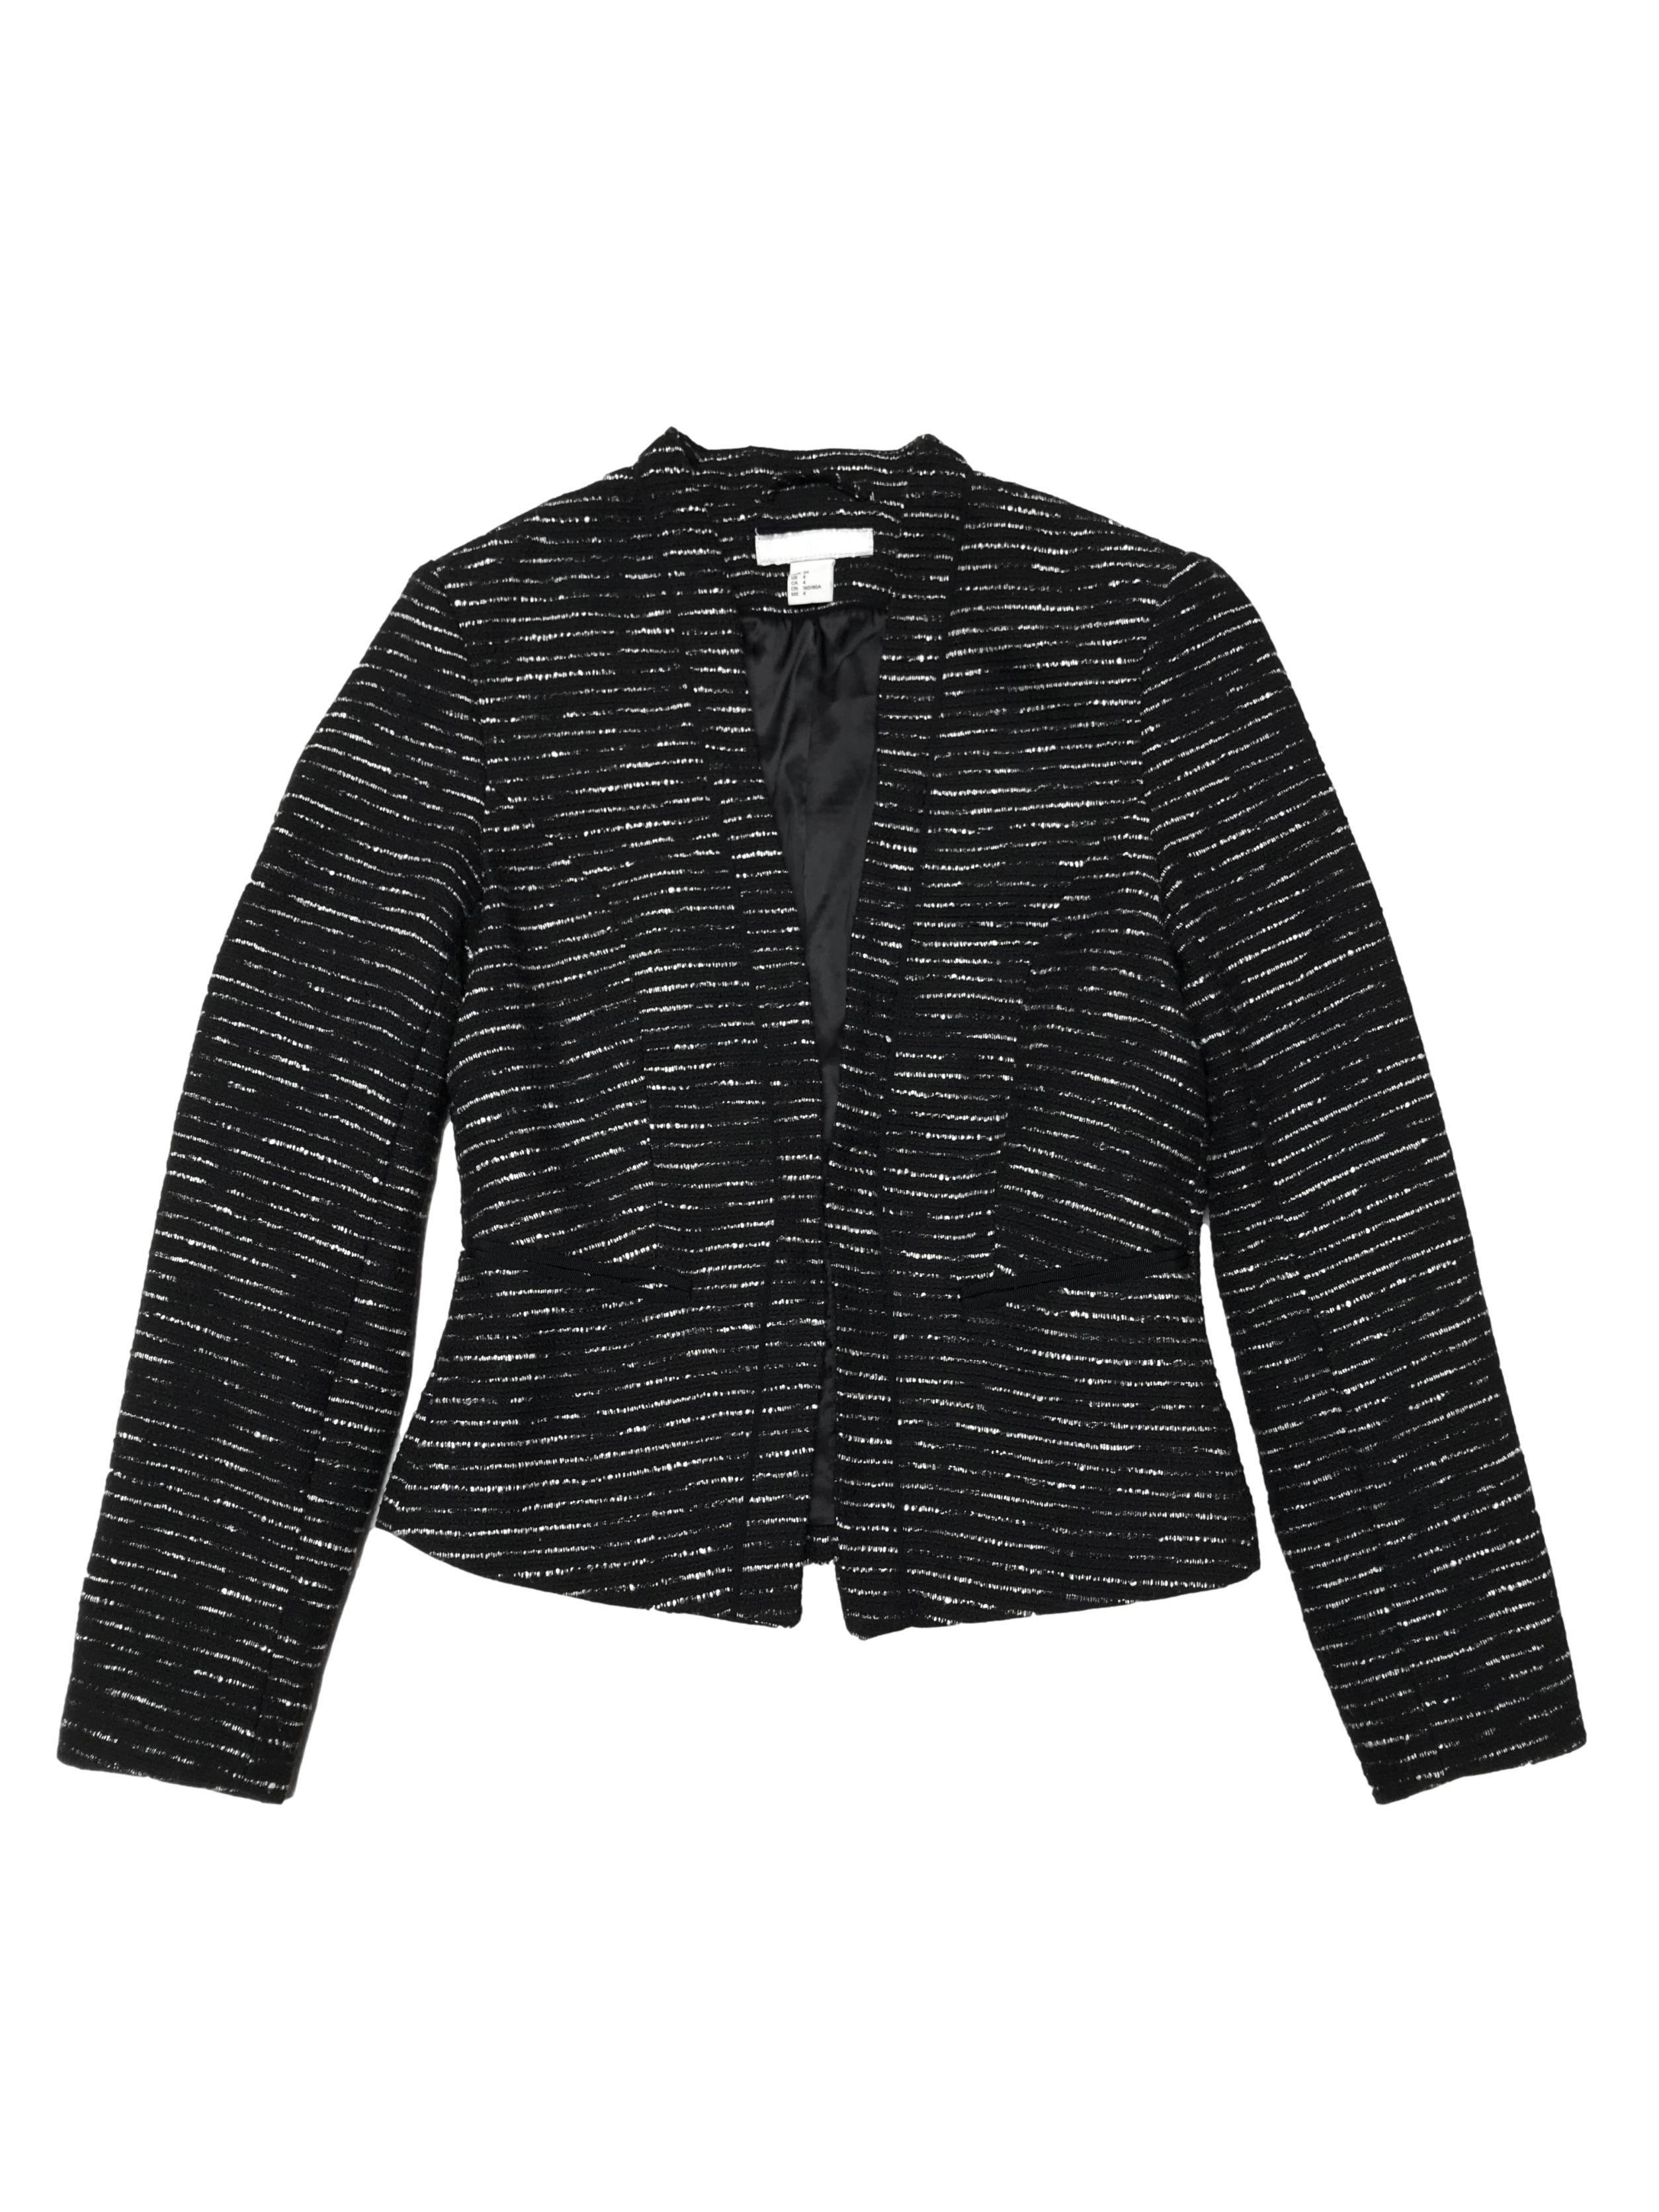 Blazer H&M tipo tweed negro y crema, forrado, con pinzas y es modelo abierto. Busto 86cm